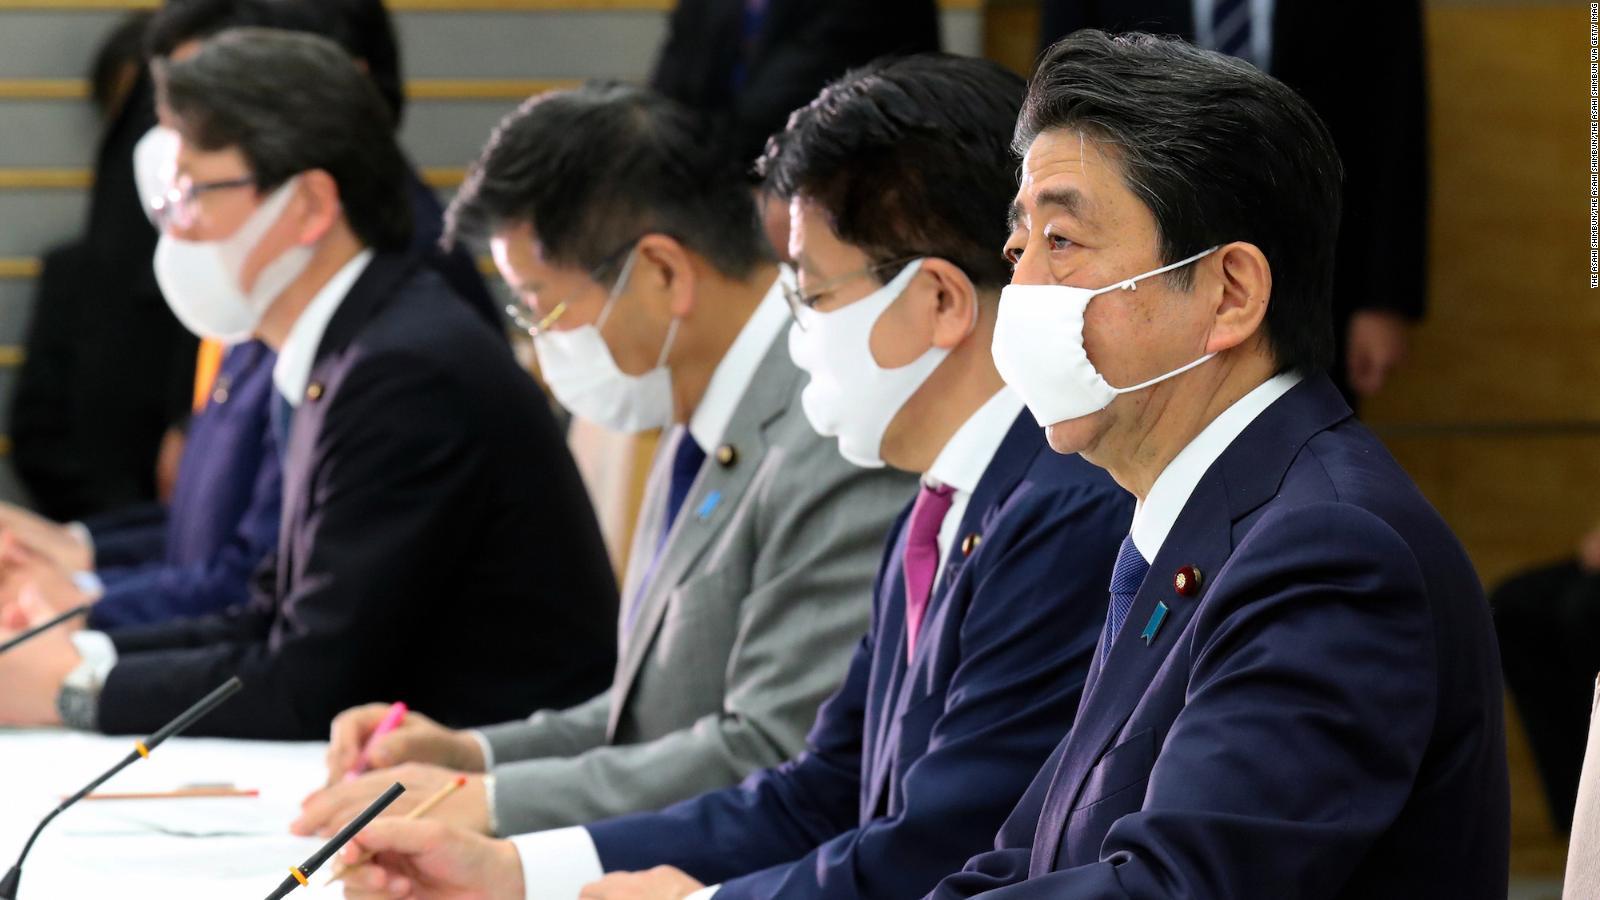 اليابان بين بطش كورونا واعتذارات القادة... فهل من مفر؟